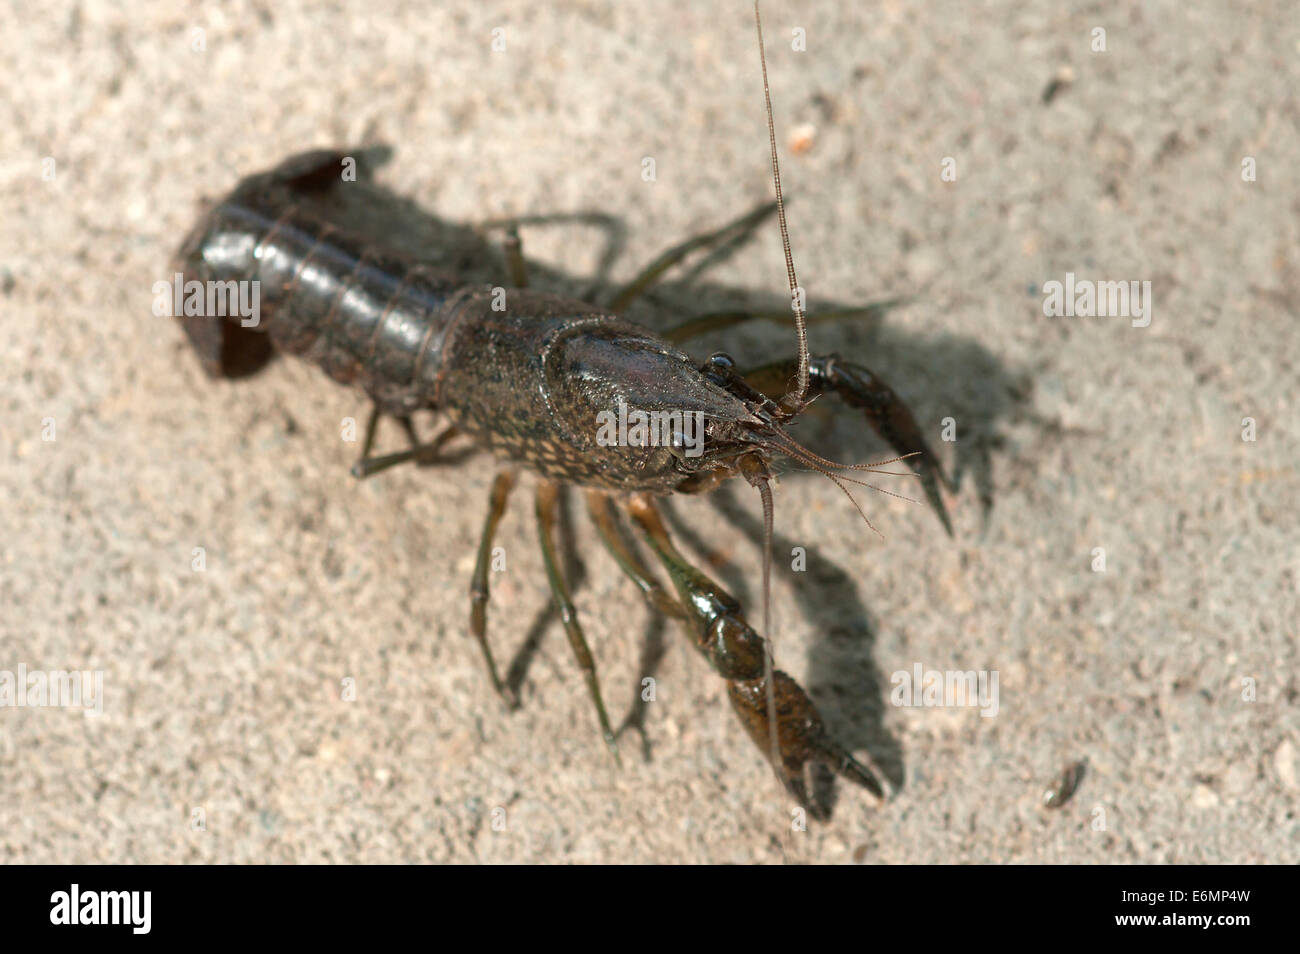 European Crayfish (Astacus astacus), captive, Germany Stock Photo